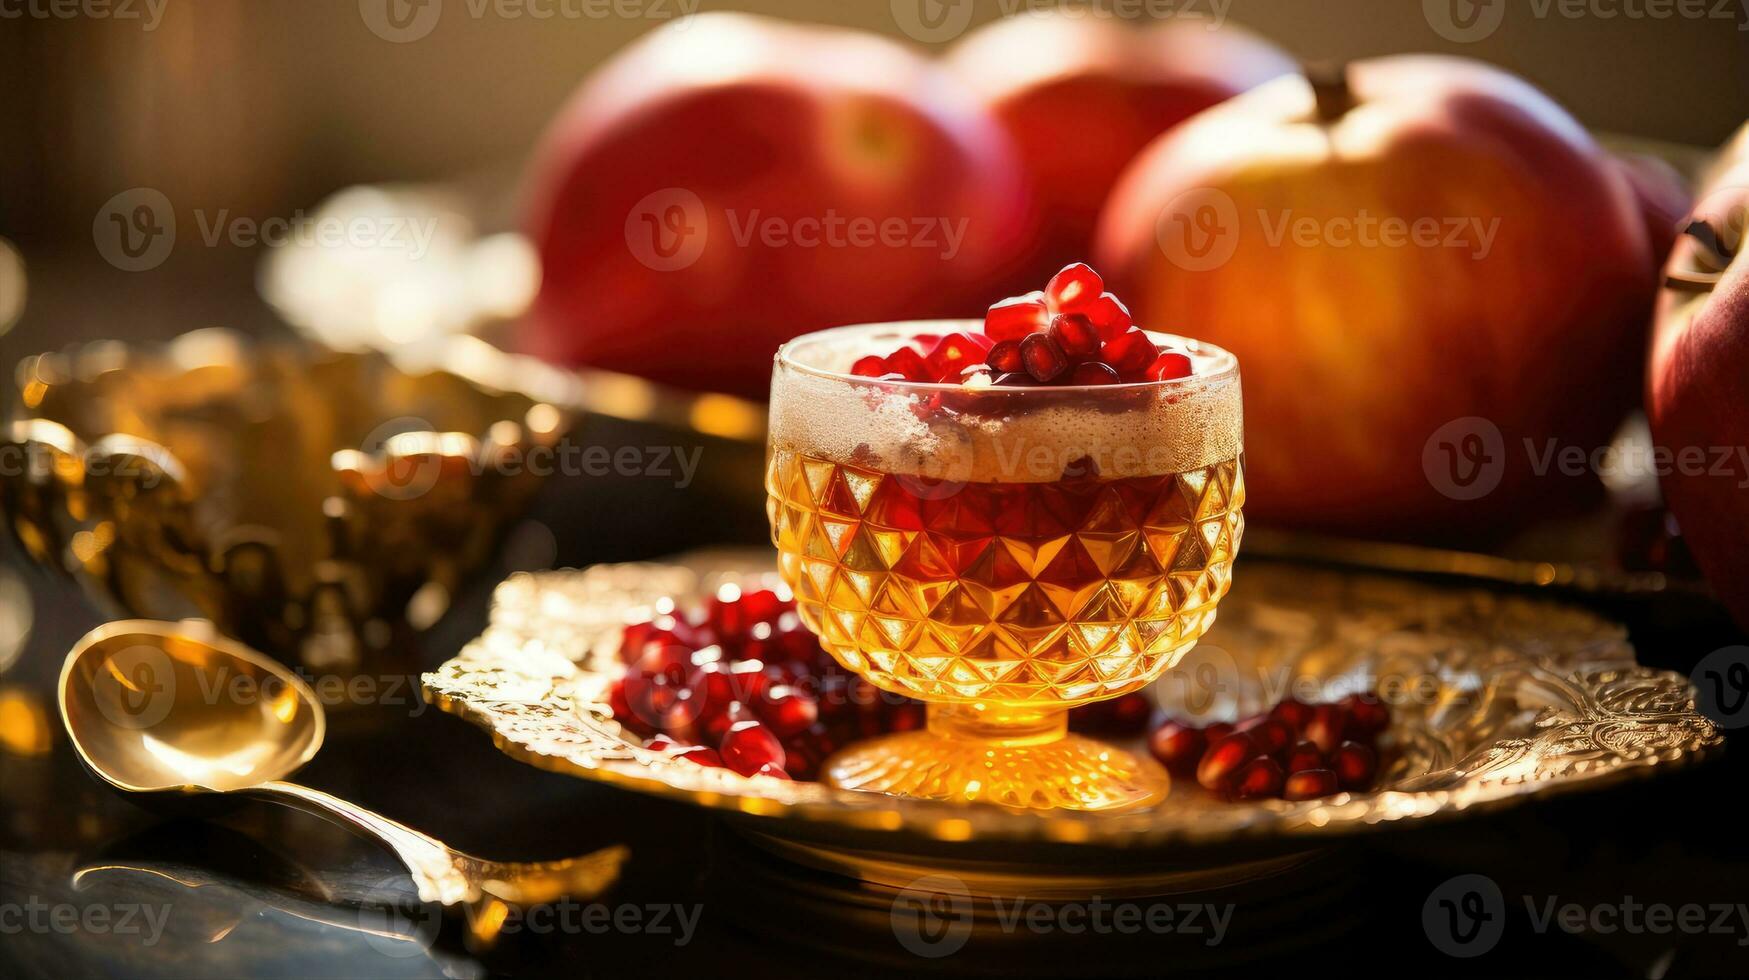 Rosh hashanah - Joods nieuw jaar vakantie concept. kom een appel met honing, granaatappel zijn traditioneel symbolen van de vakantie foto